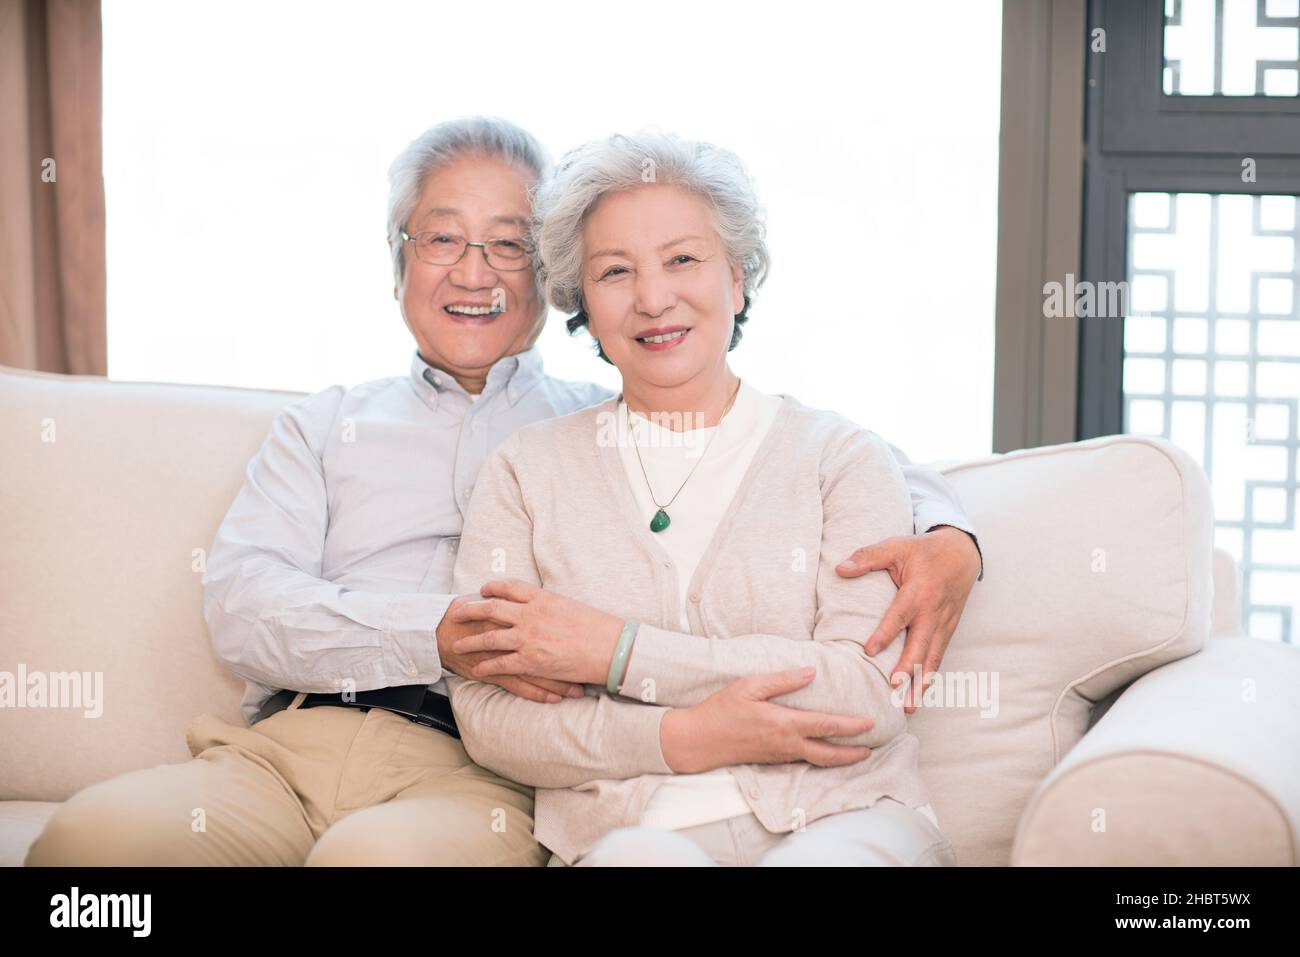 Glückliches altes Paar, das auf dem Sofa sitzt Stockfoto